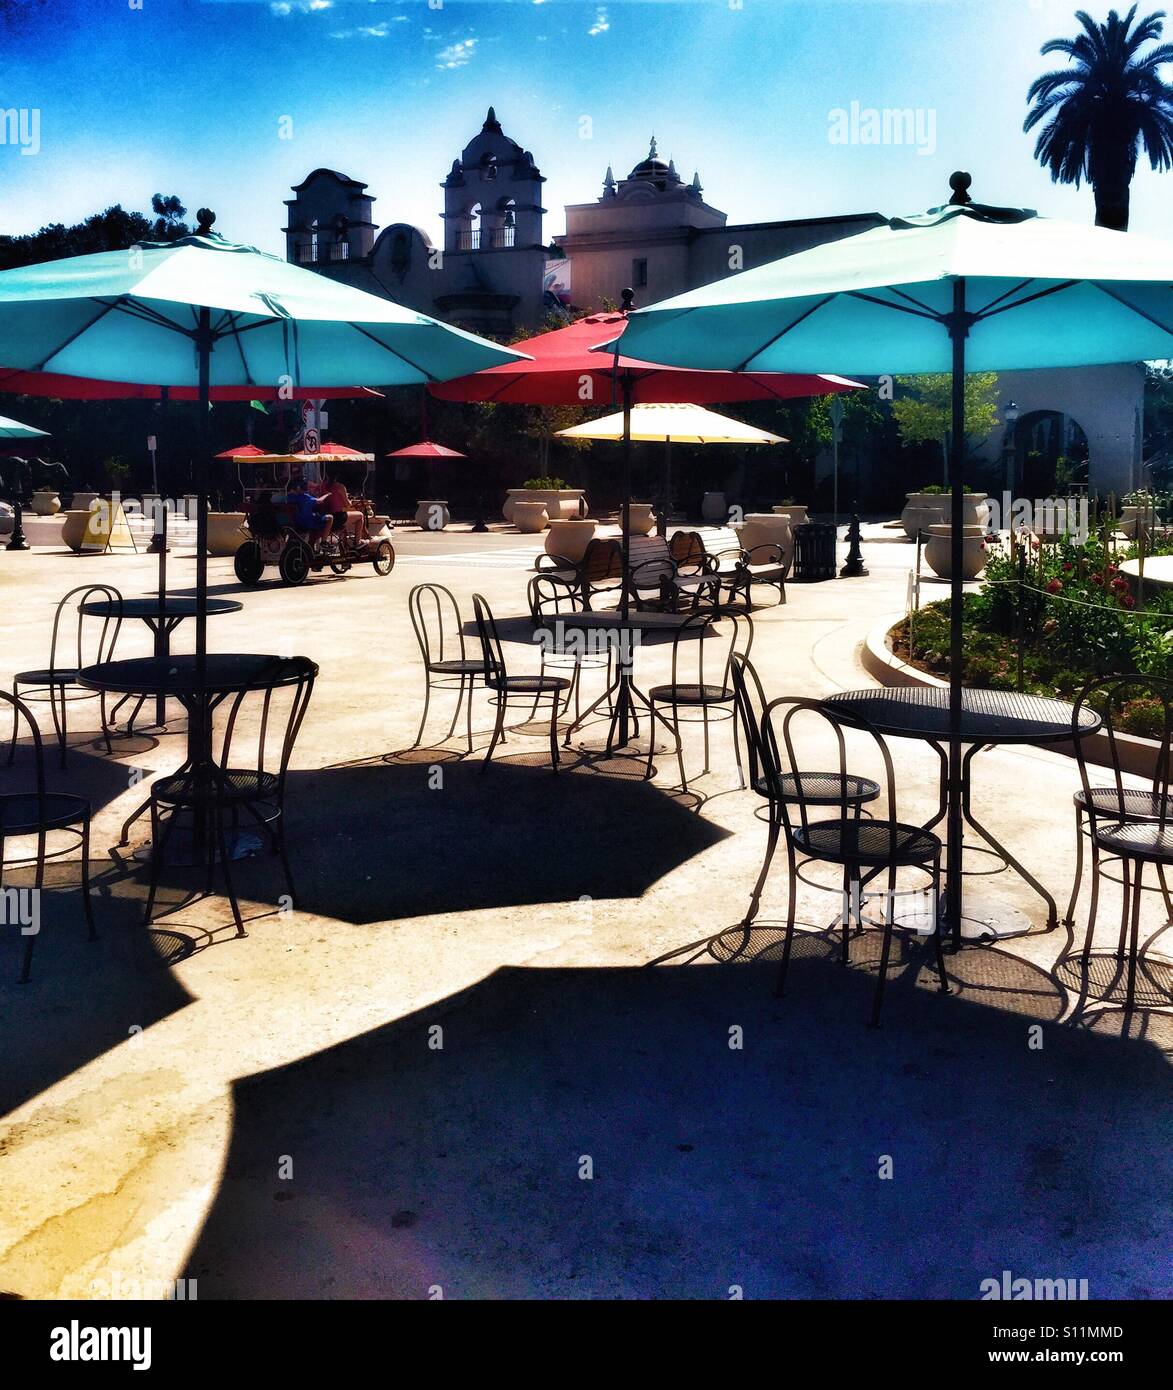 Zona para comer al aire libre en el parque Balboa en San Diego, CA. Zona de mesas y sillas negras de hierro, food court, área de comer en el exterior con luz brillante multicolor paraguas Foto de stock